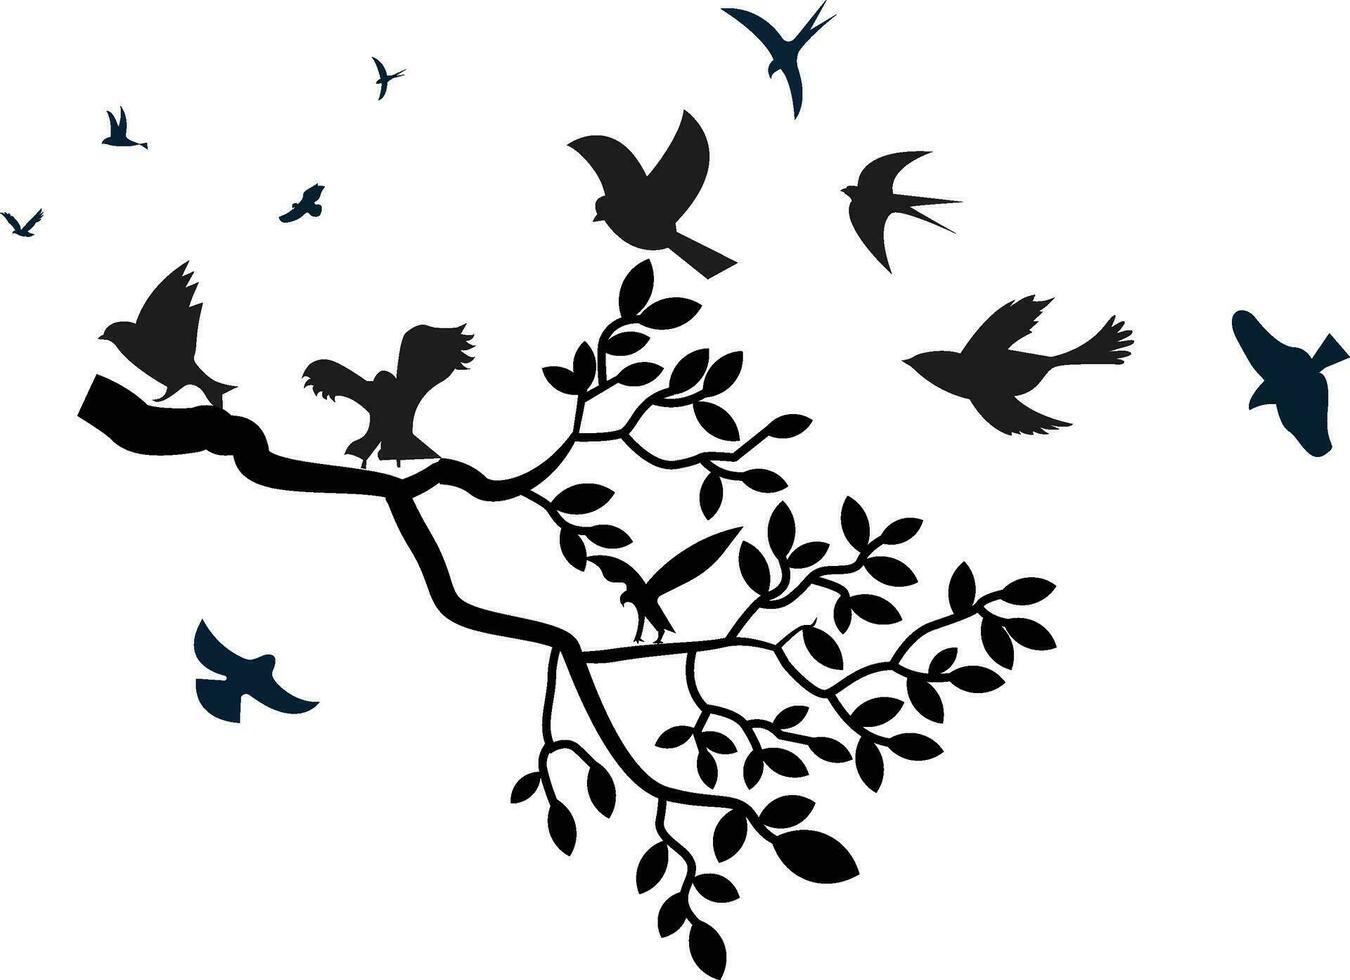 Baum Ast mit Blätter, Vögel thront und fliegend mit schwarz und Weiß Silhouette - - Mauer Abziehbilder vektor